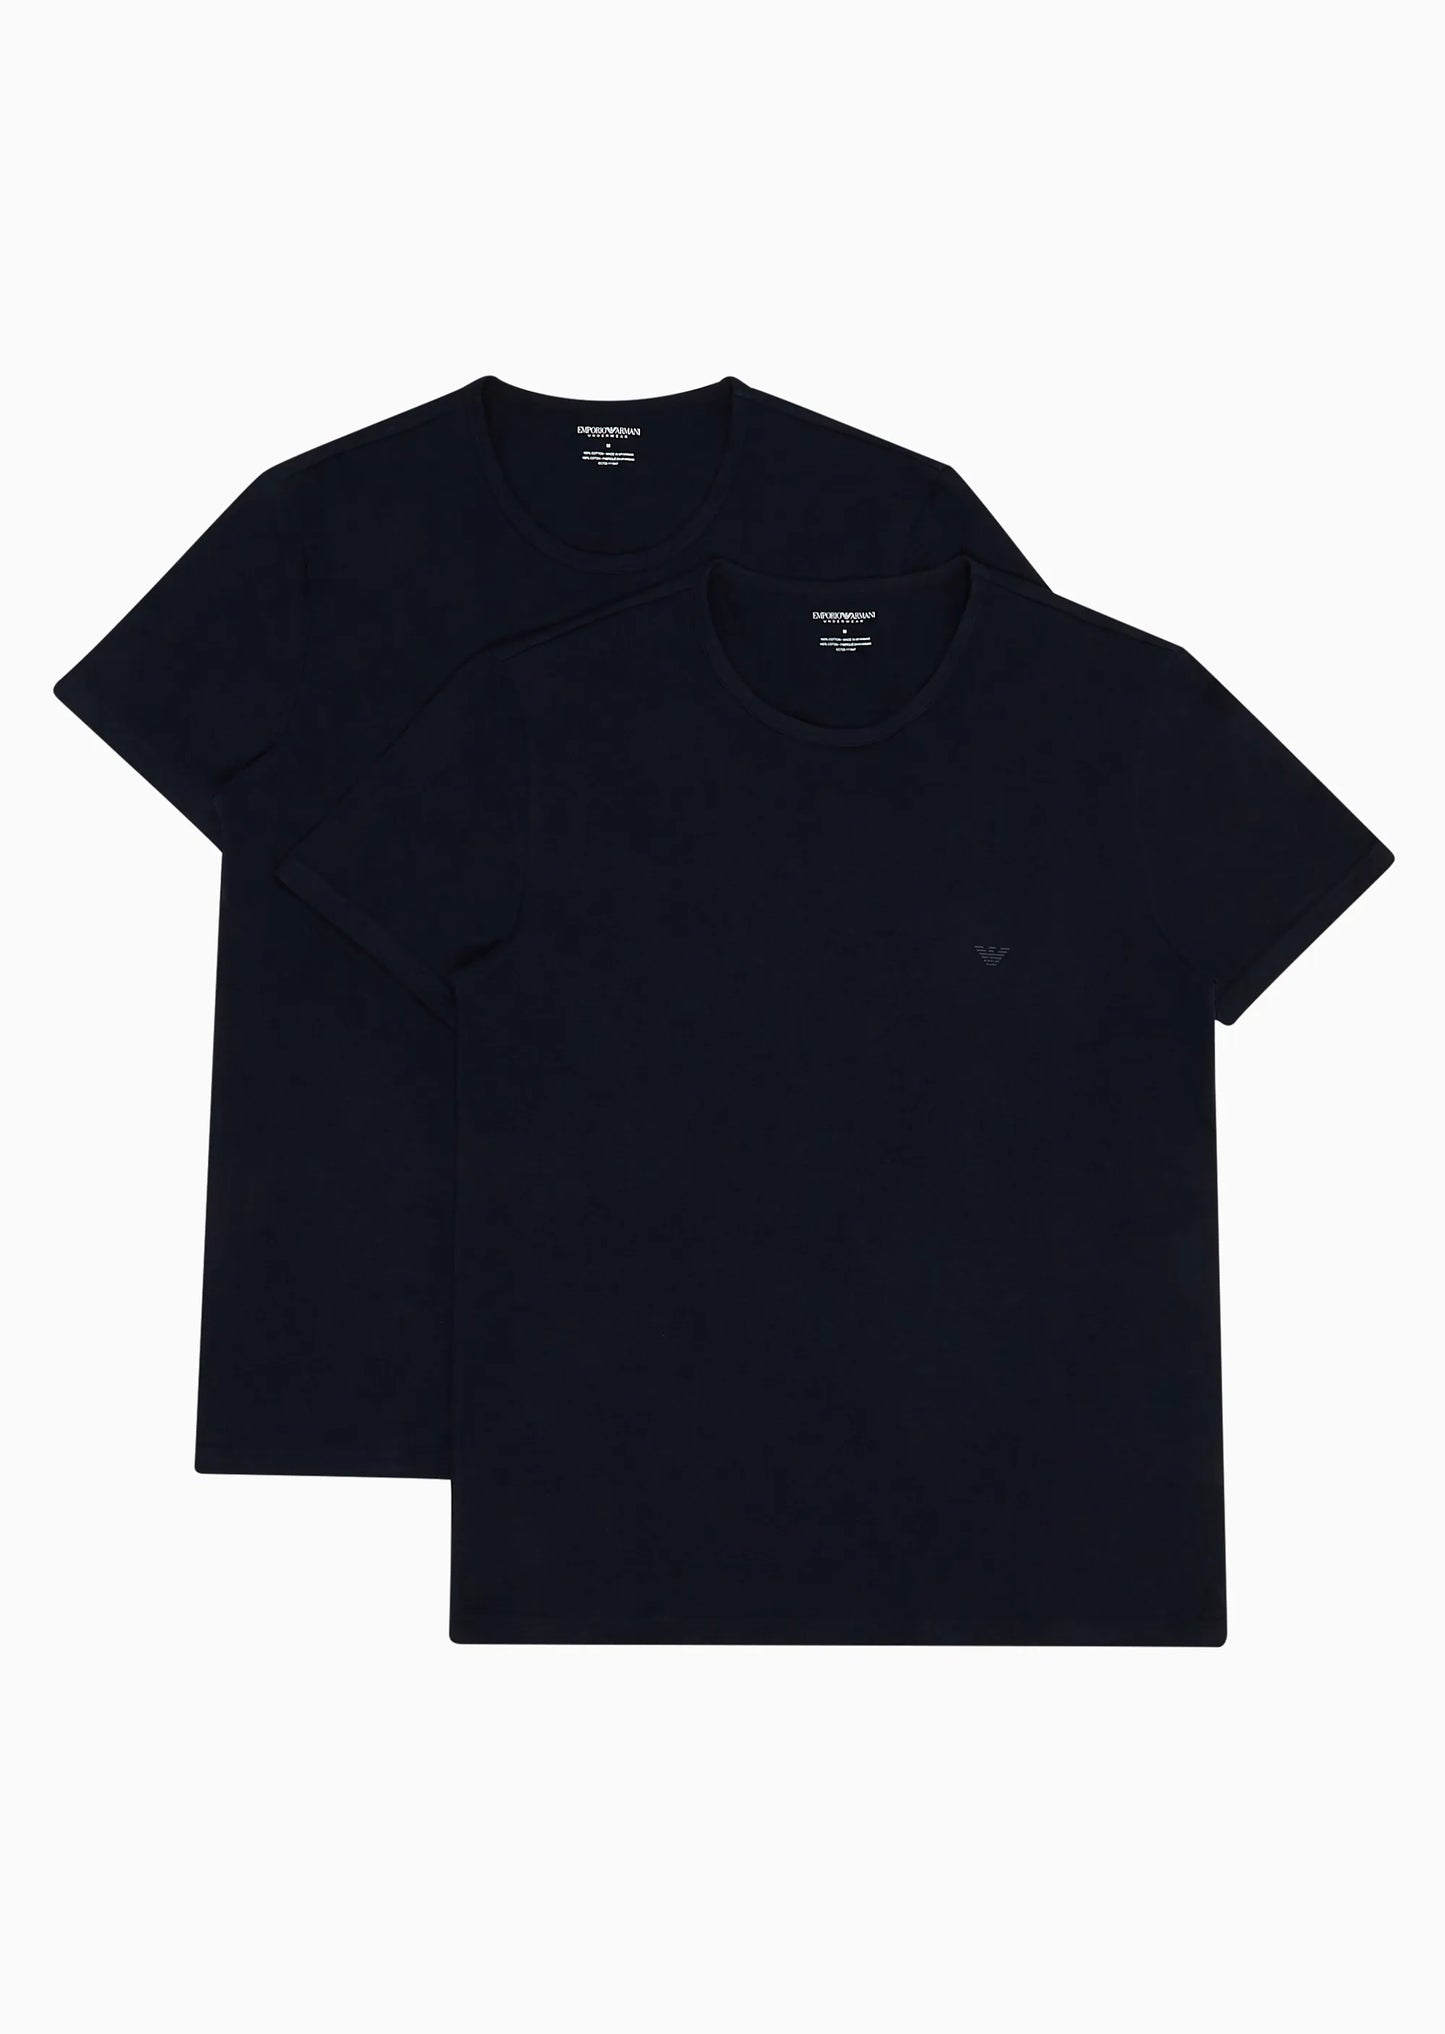 Pacco 2 T-shirt intimo vestibilità regolare in puro cotone